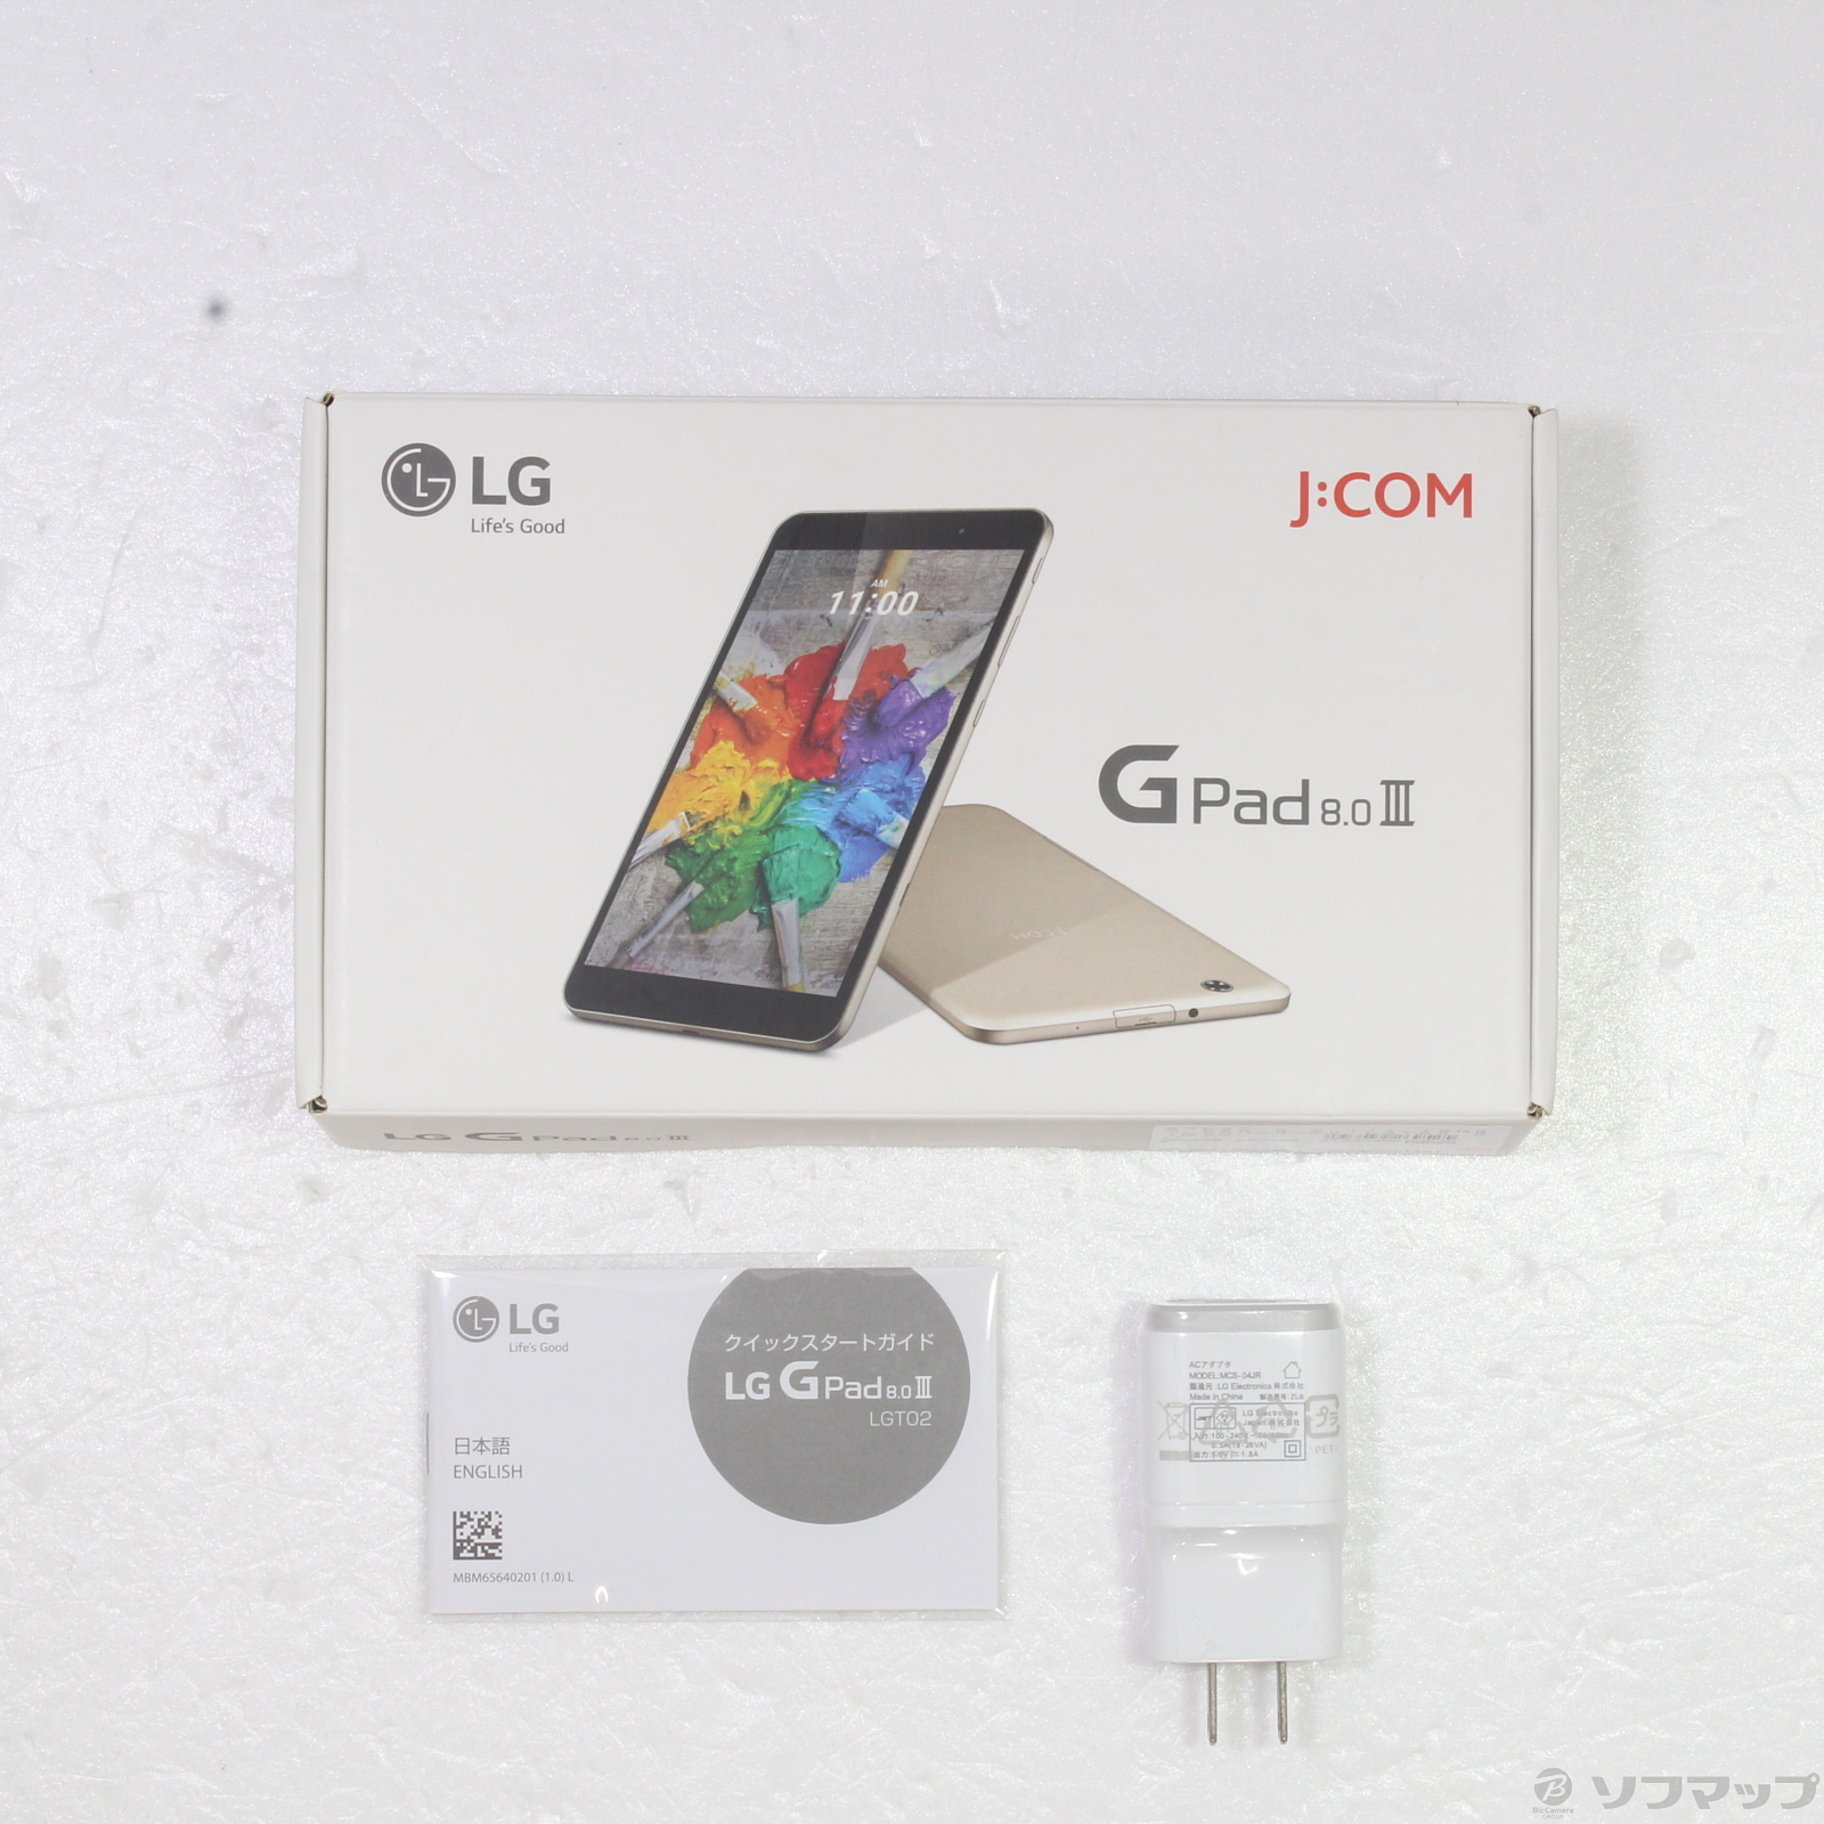 LGタブレット LGTO2 Gpad 8.0 Ⅲ JCOM版 - タブレット